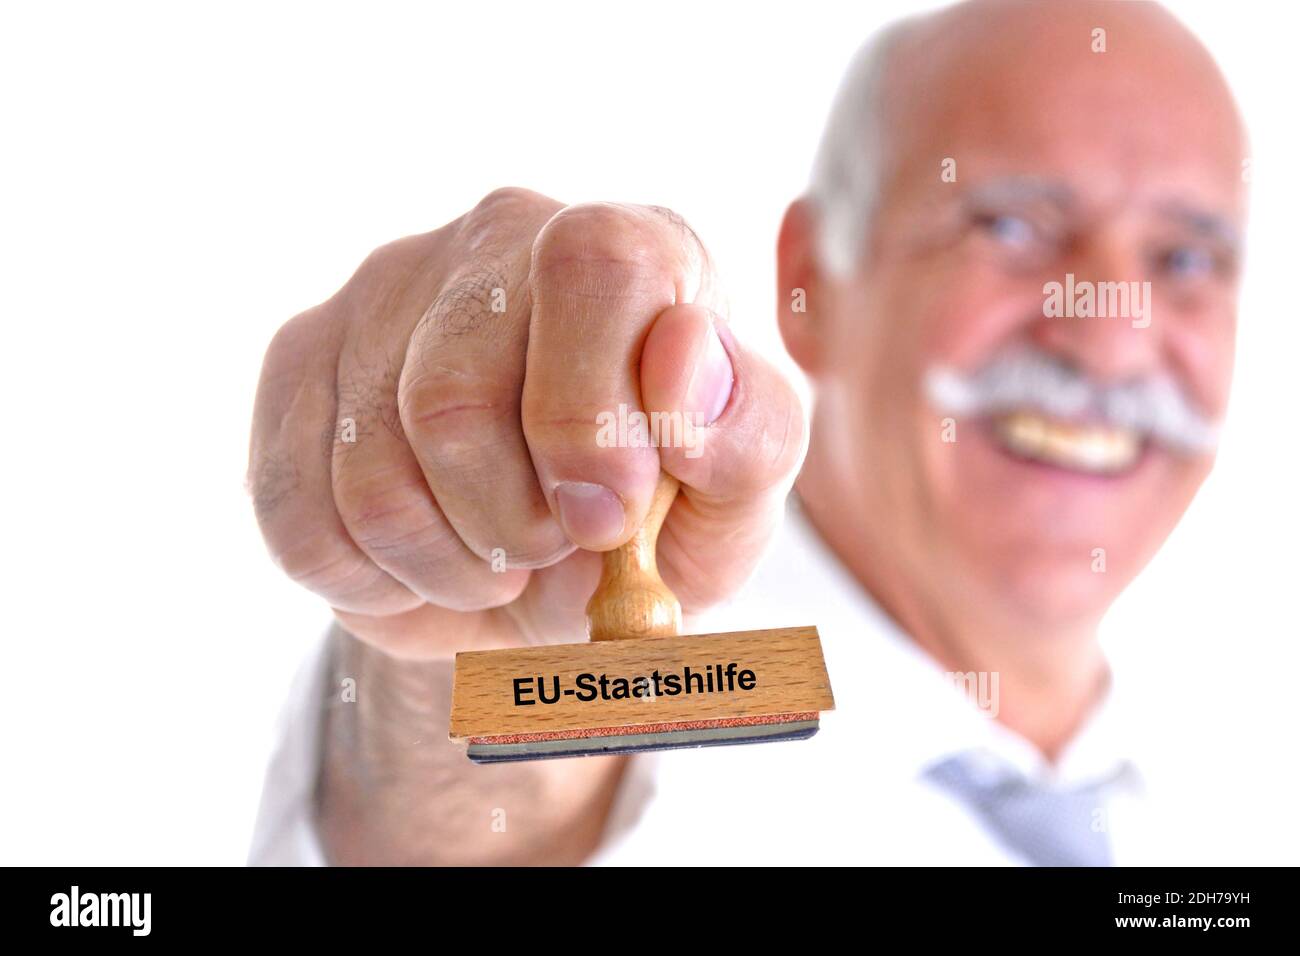 65, 70, Jahre, Mann hält Stempel in der Hand, Aufschrift: EU-Staatshilfe, Stock Photo